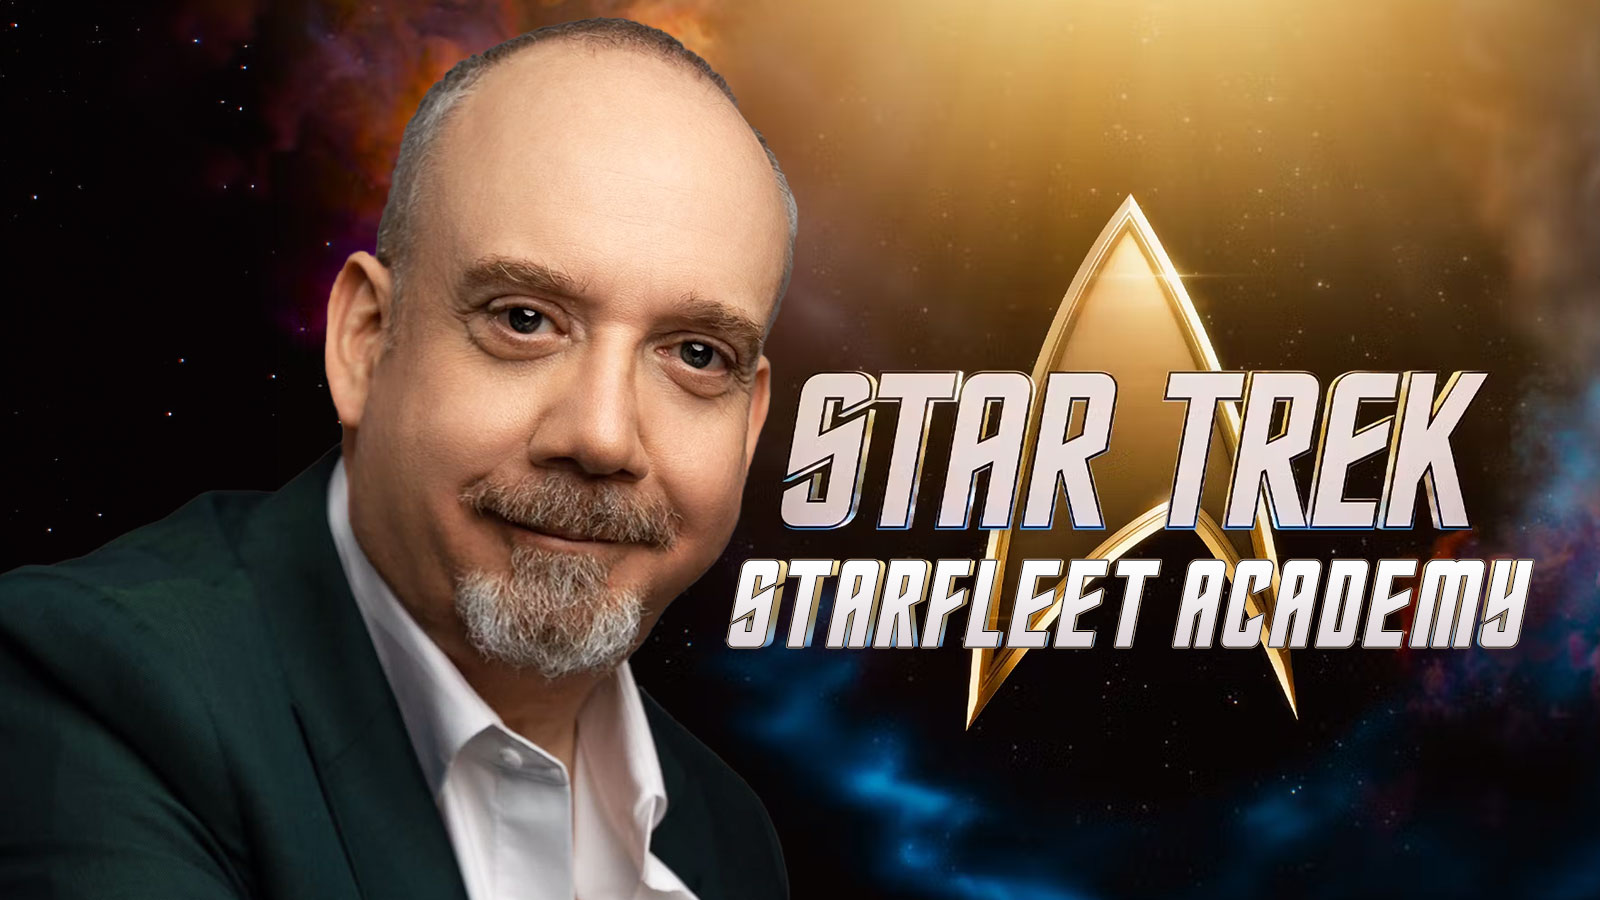 Emmy Award winner Paul Giamatti cast in Star Trek: Starfleet Academy